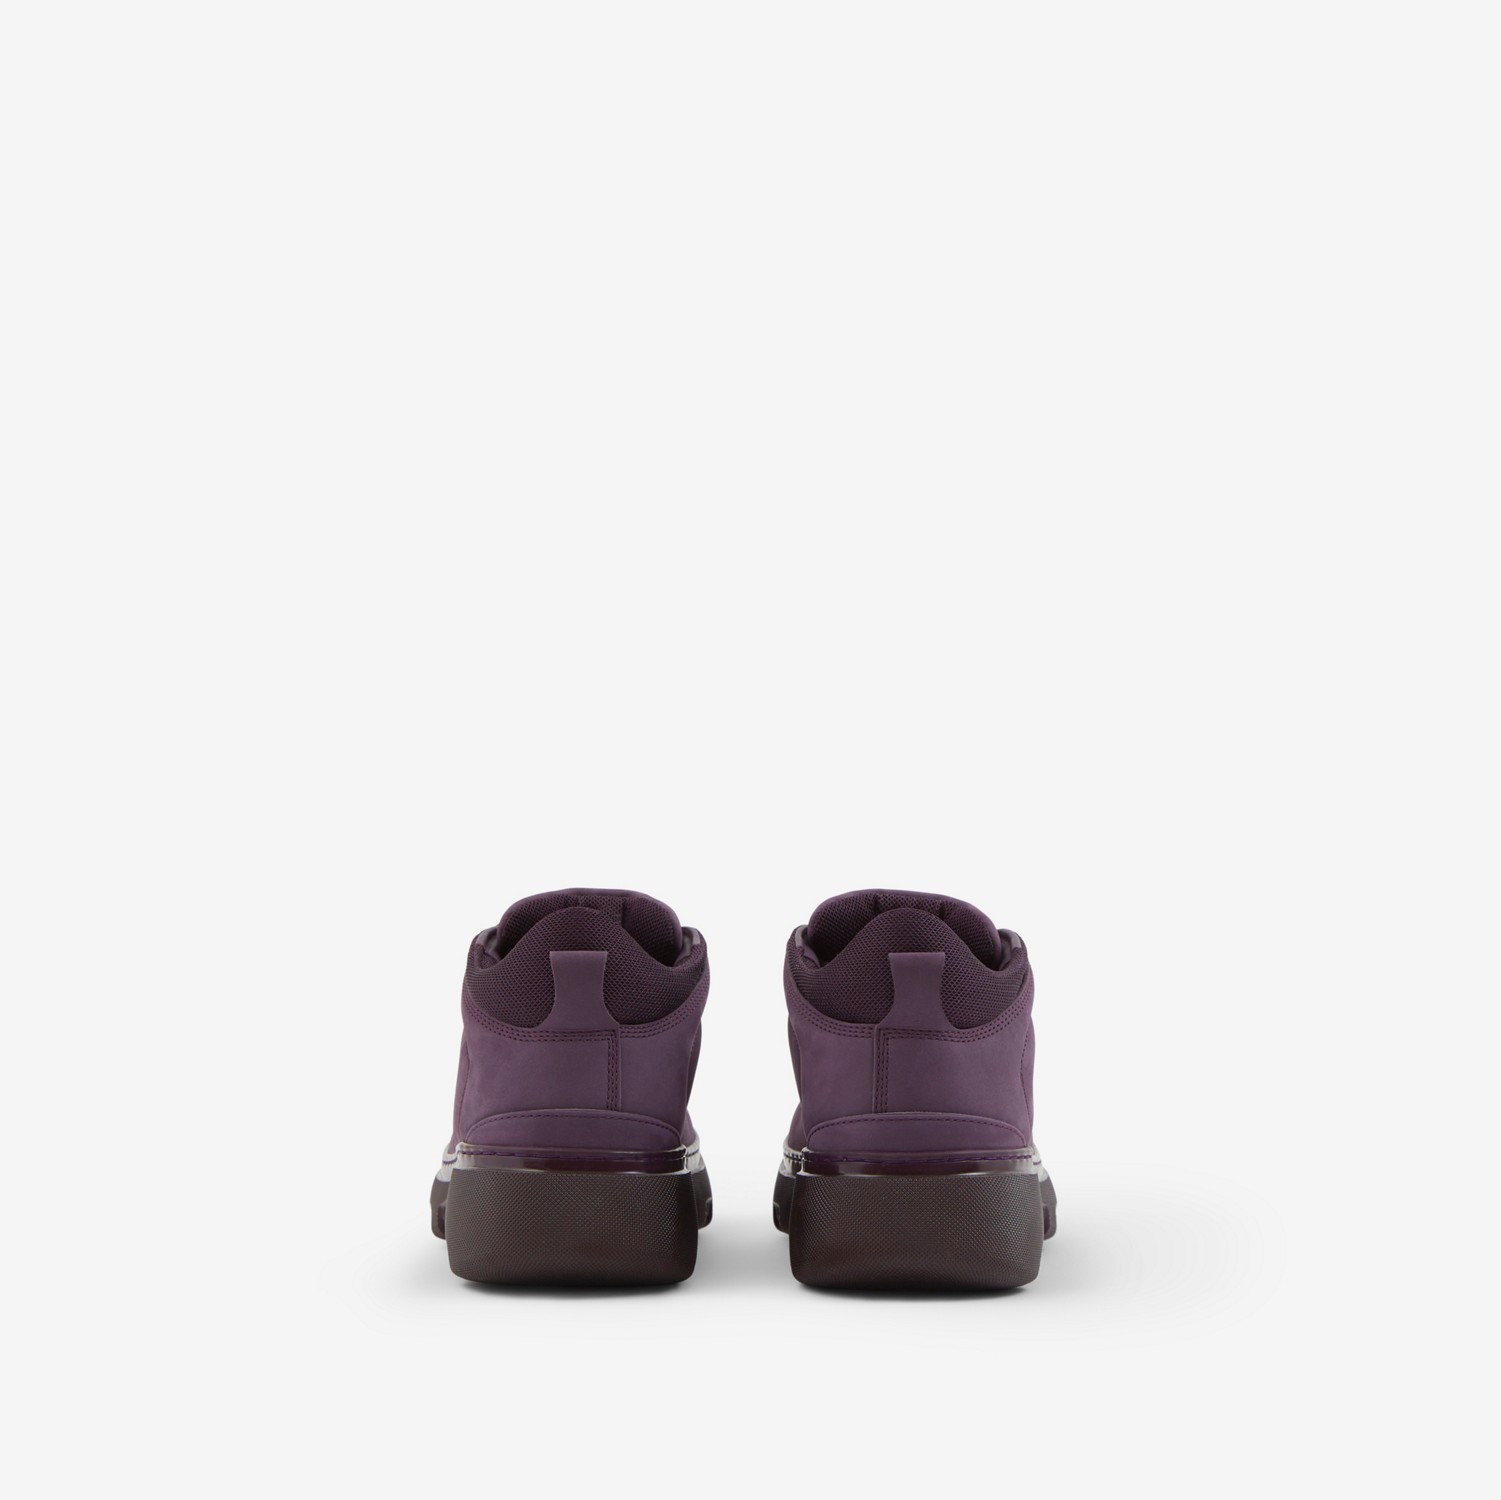 磨绒皮革登山靴 (紫红色) - 男士 | Burberry® 博柏利官网